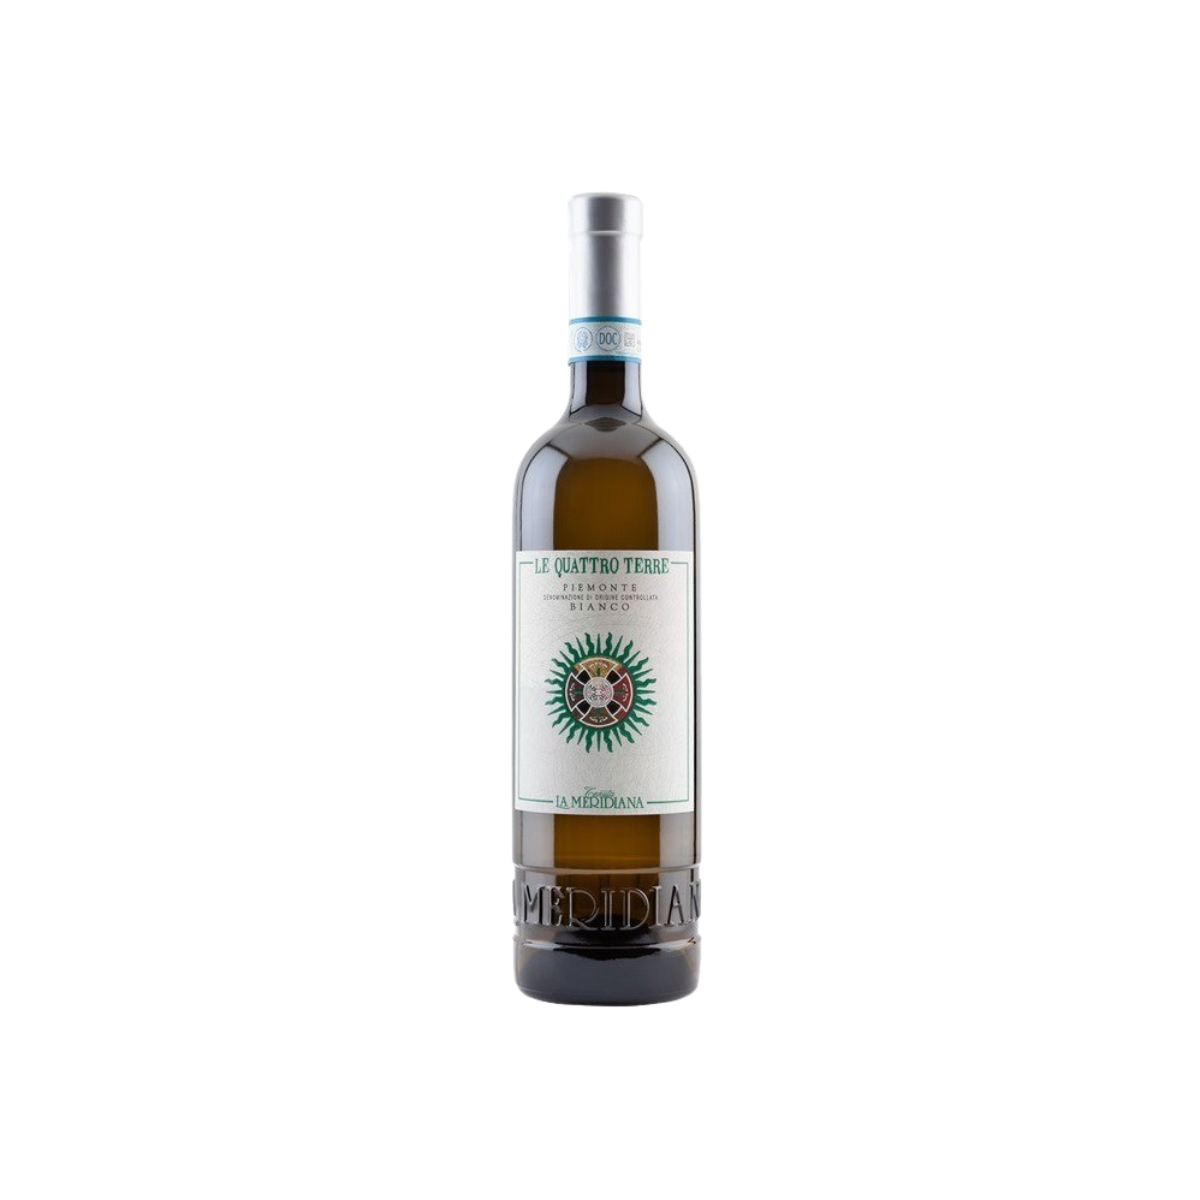 Chardonnay/Nebbiolo 'Le Quattro' Terre Bianco 2019